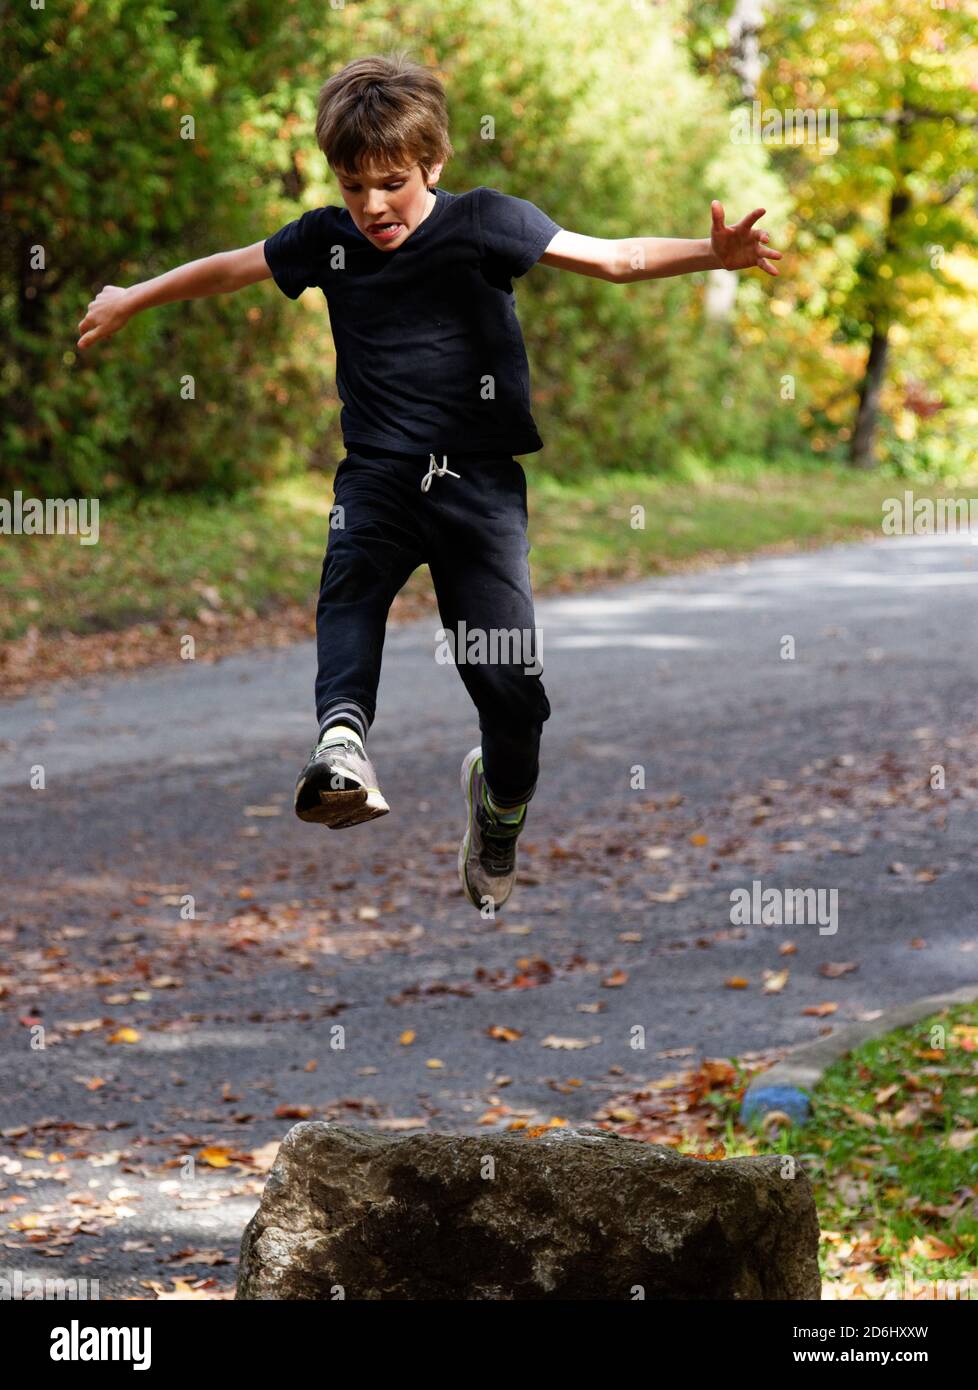 Ein athletischer 8-jähriger Junge, der hoch in die Sprünge Luft Stockfoto